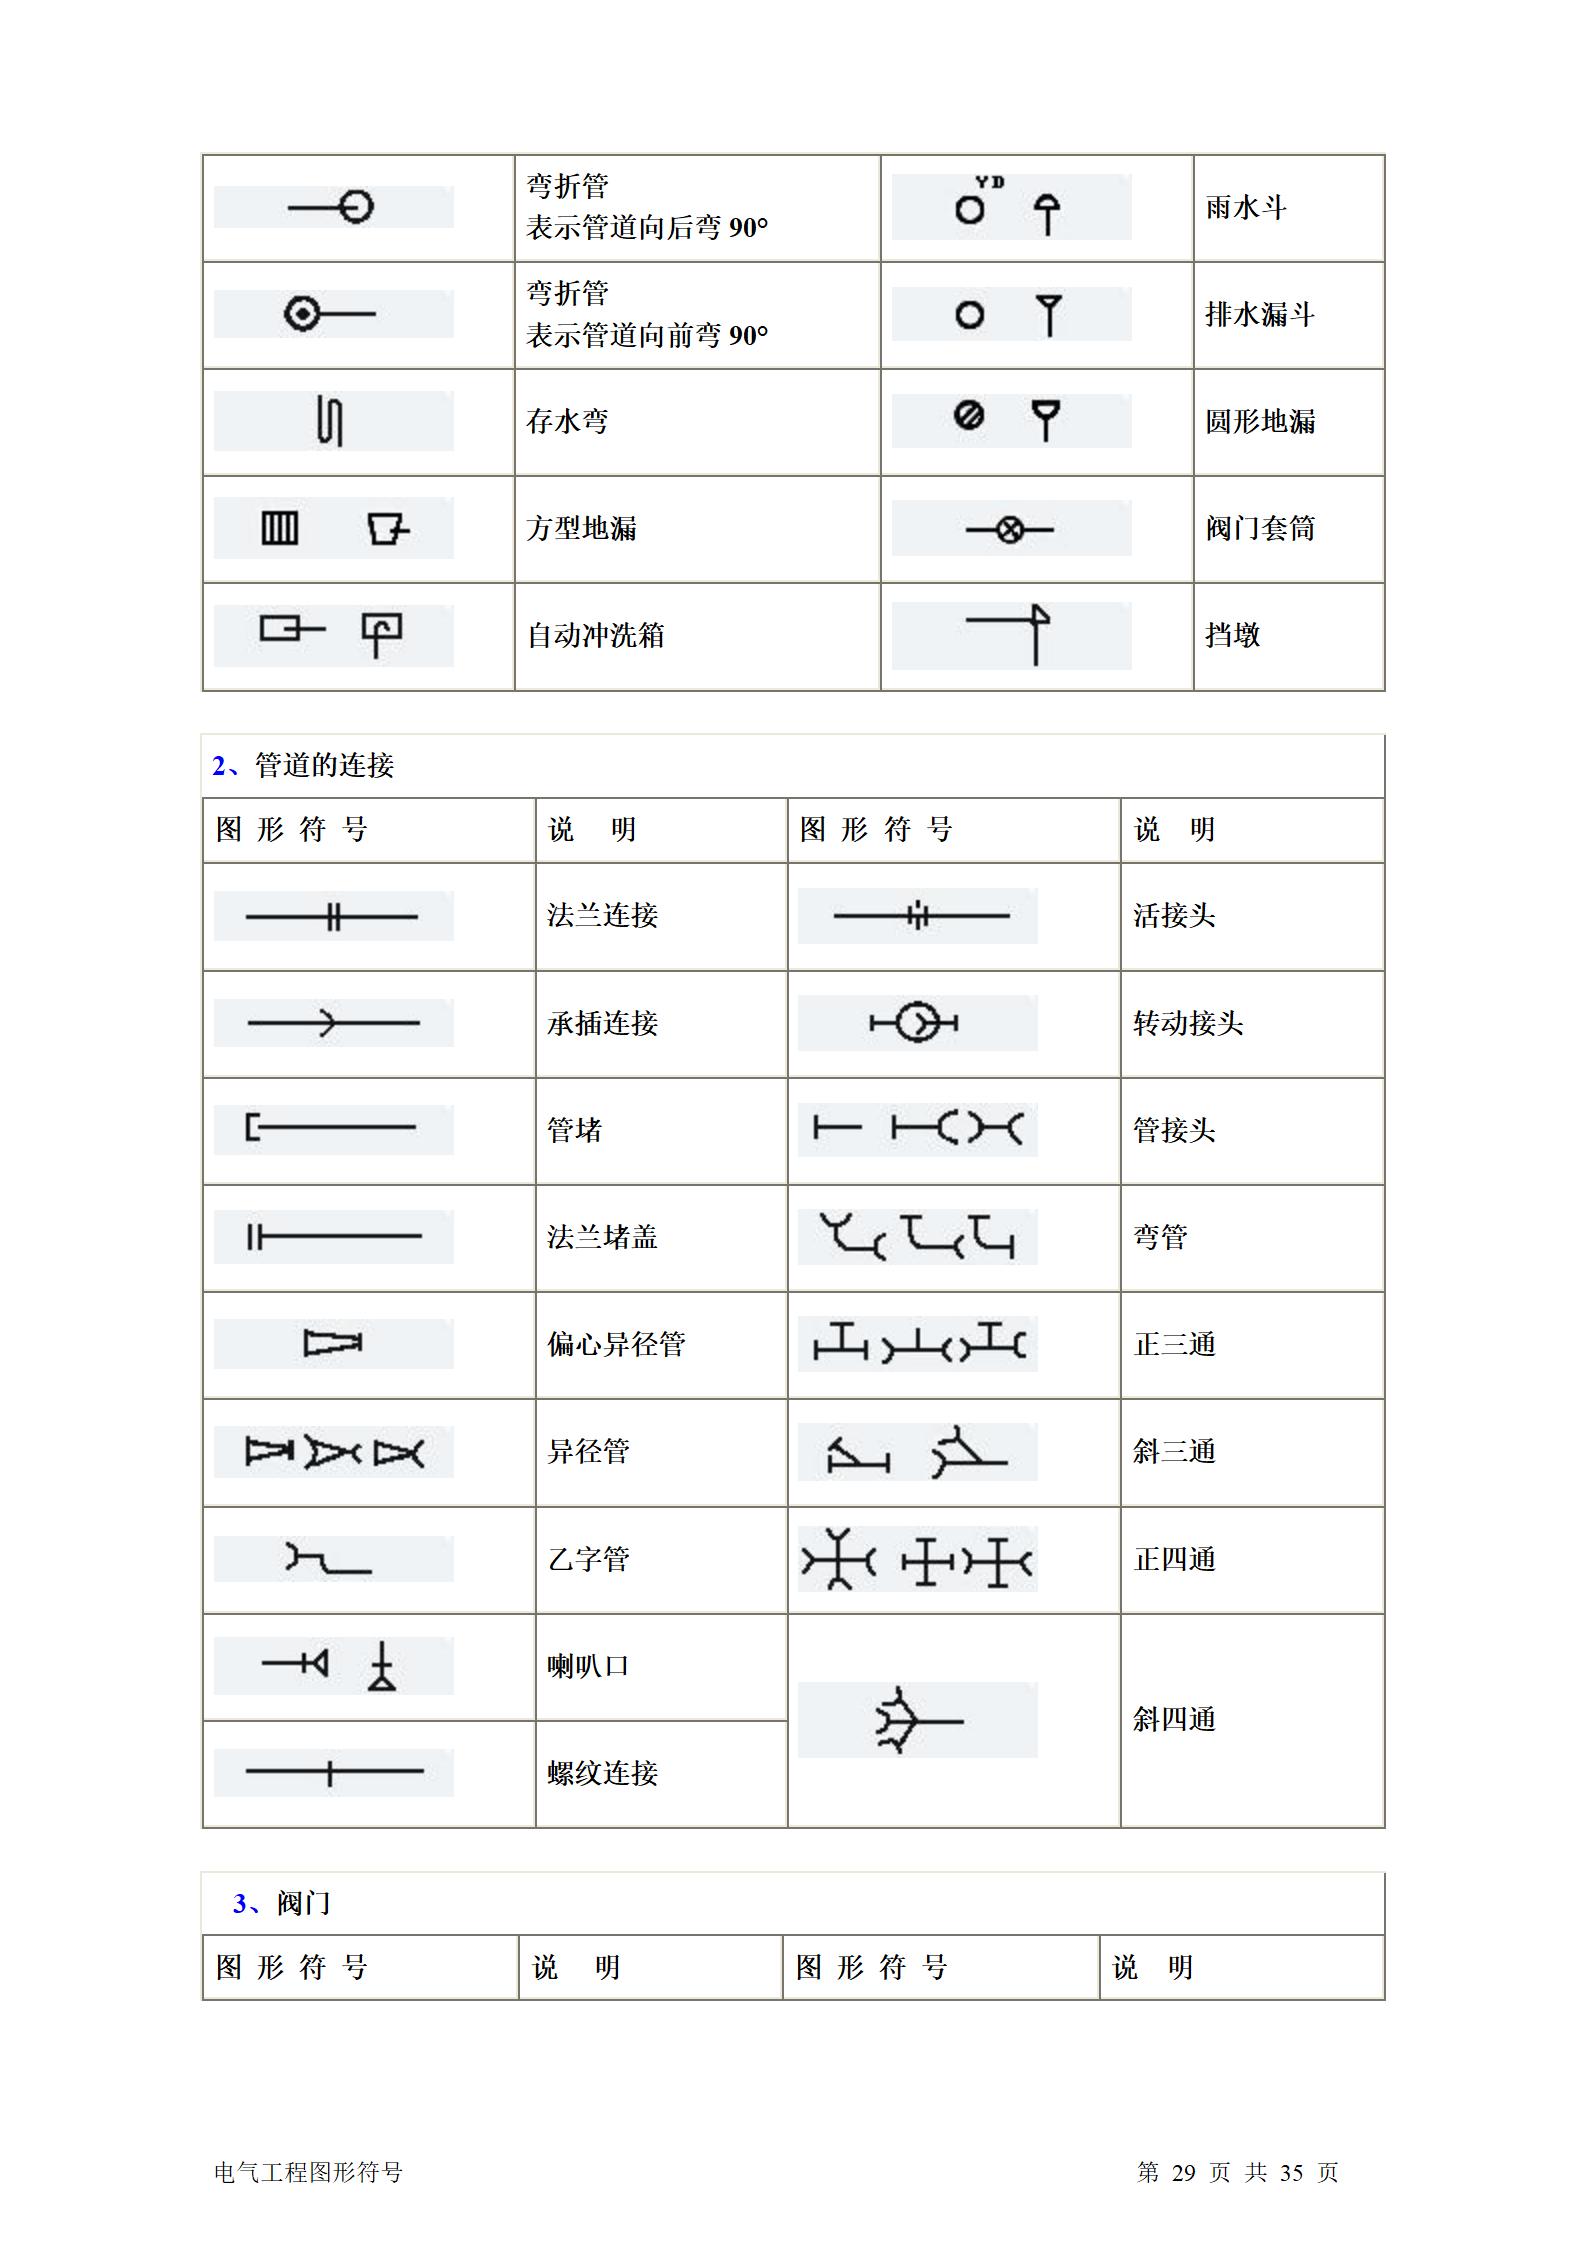 建筑电气、水暖、通风工程图形符号大全word版插图(29)